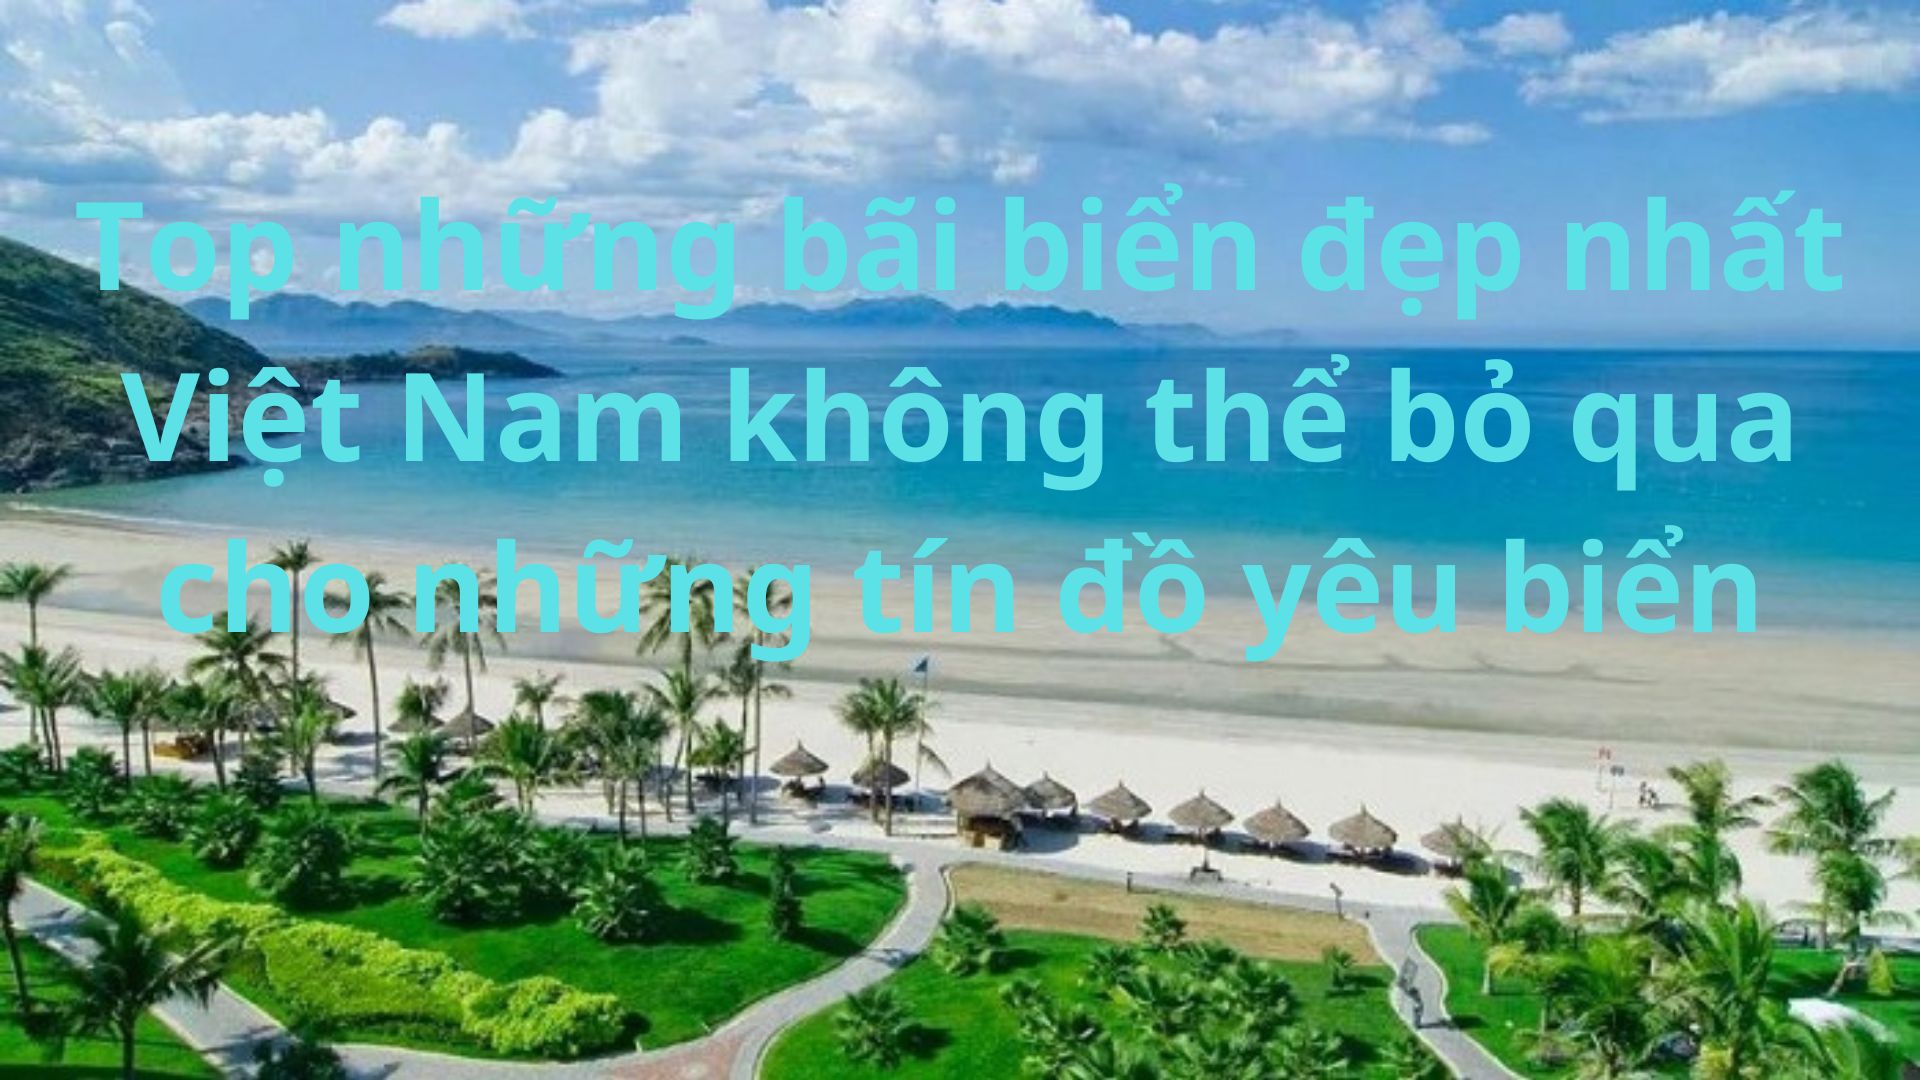 Top những bãi biển đẹp nhất Việt Nam không thể bỏ qua cho những tín đồ yêu biển